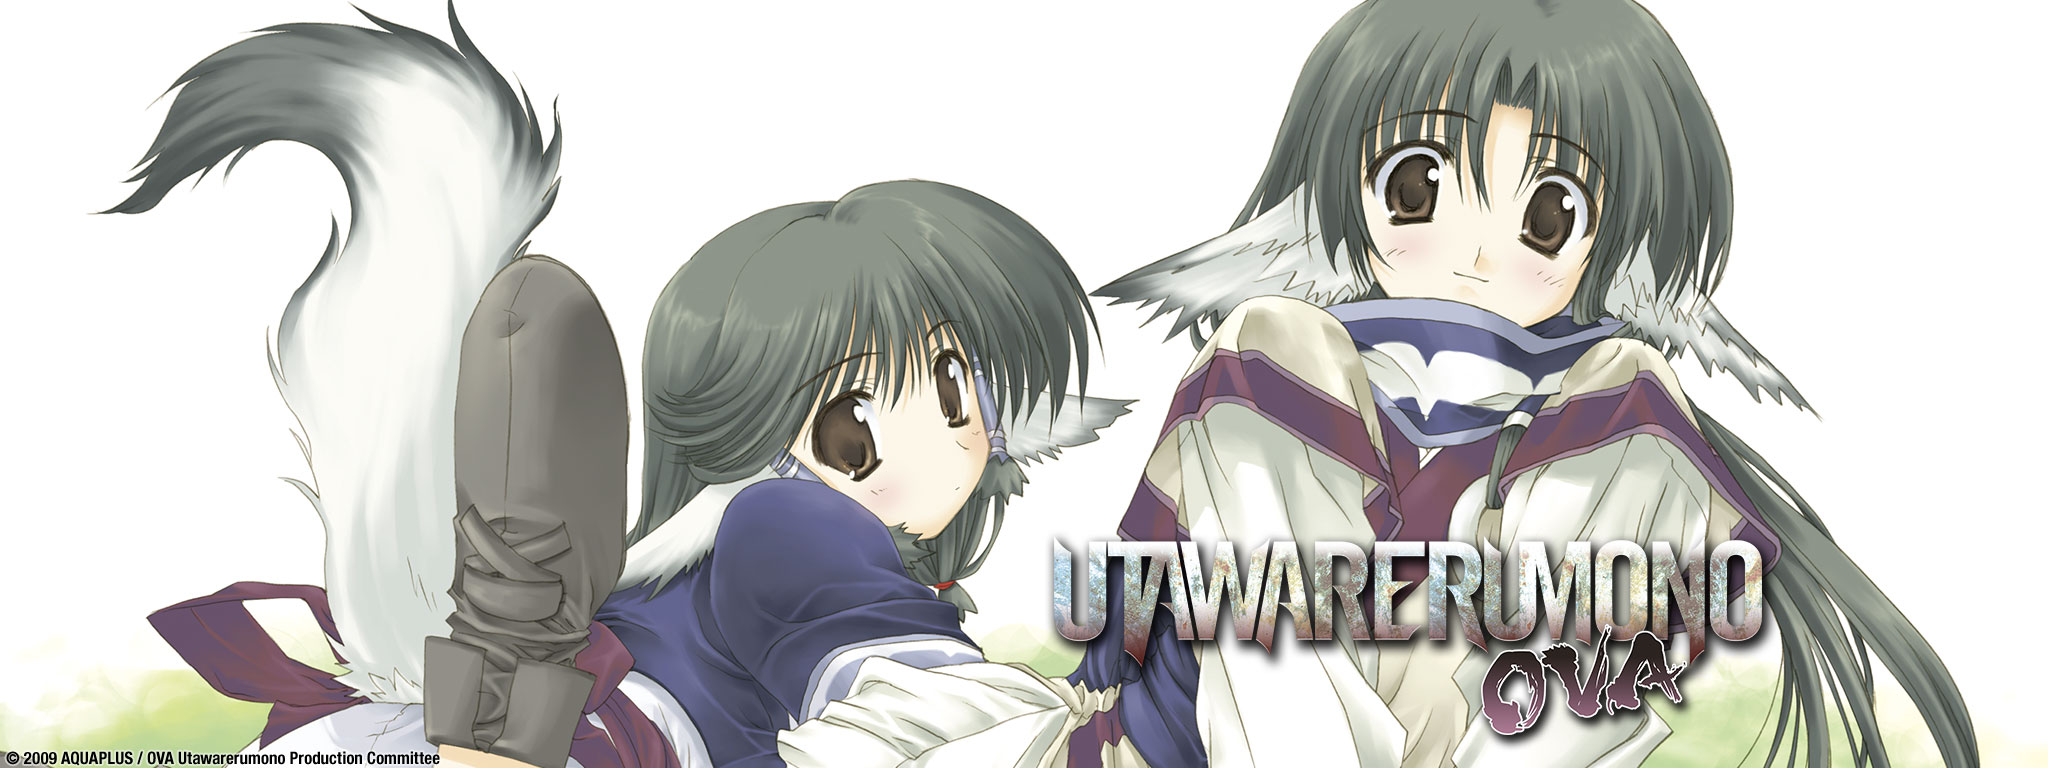 Title Art for Utawarerumono OVA